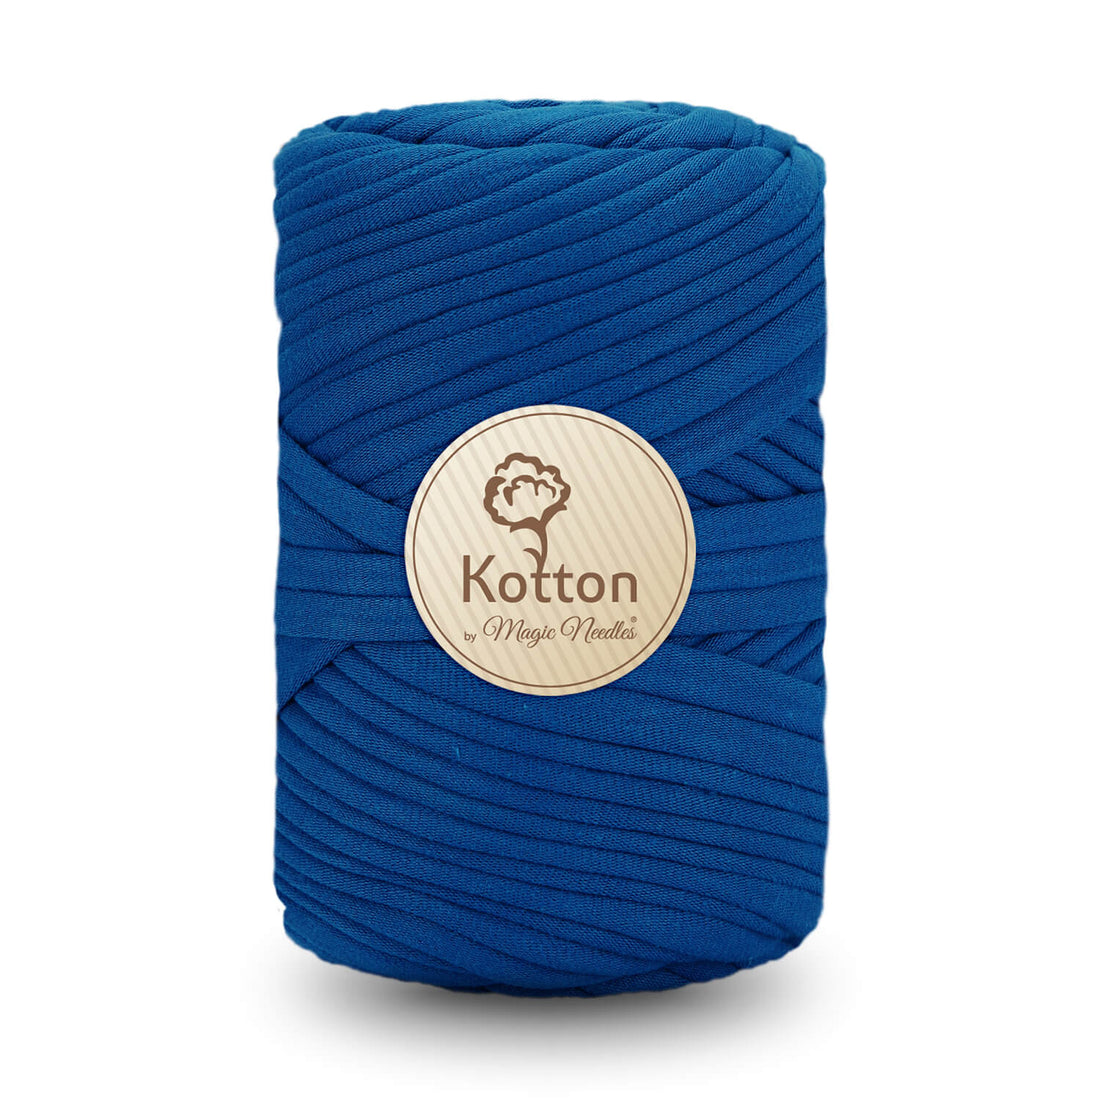 T-Shirt Yarn by Kotton - Royal Blue V15